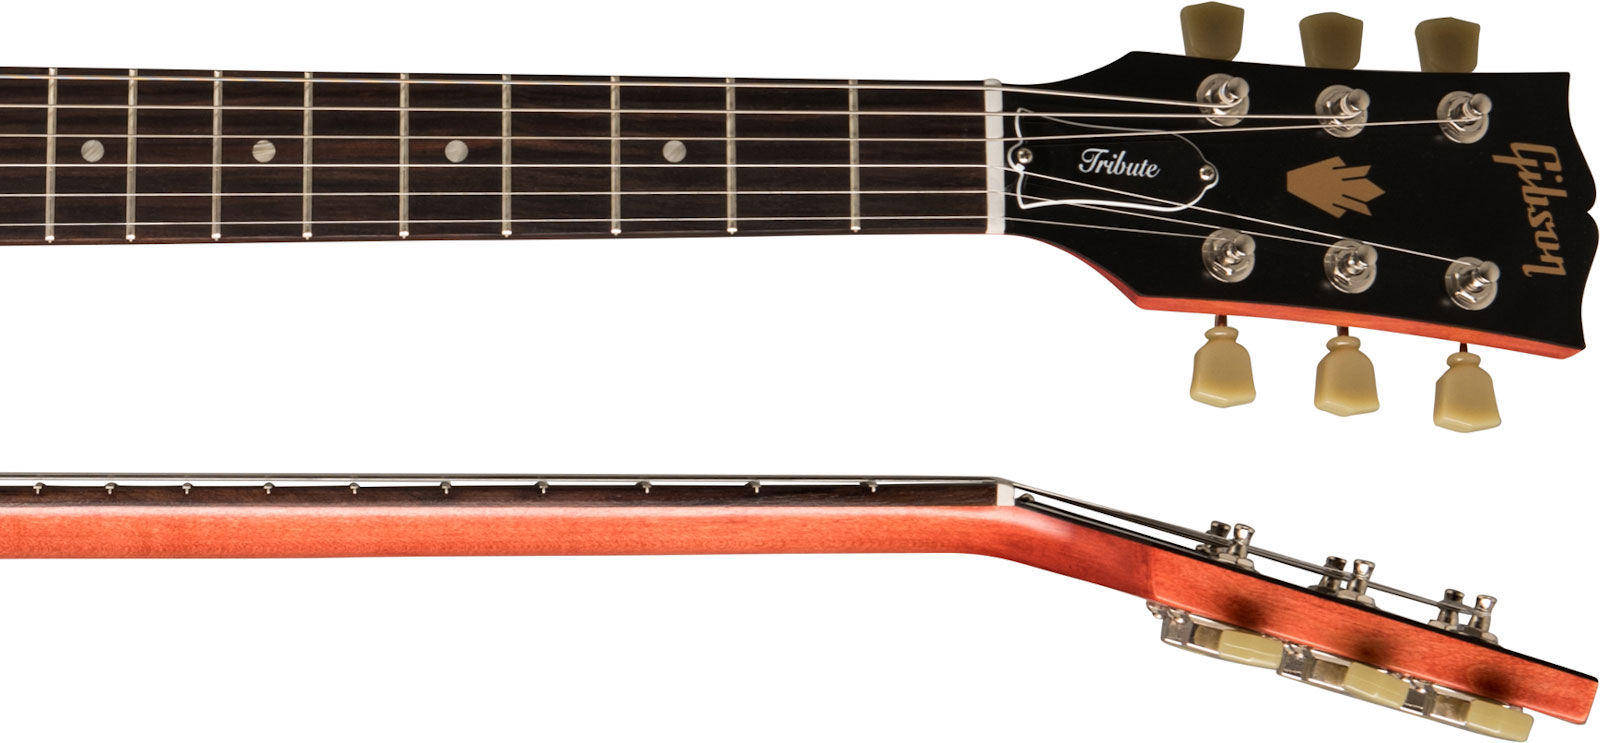 Gibson Sg Tribute Modern 2h Ht Rw - Vintage Cherry Satin - Retro-rock elektrische gitaar - Variation 3